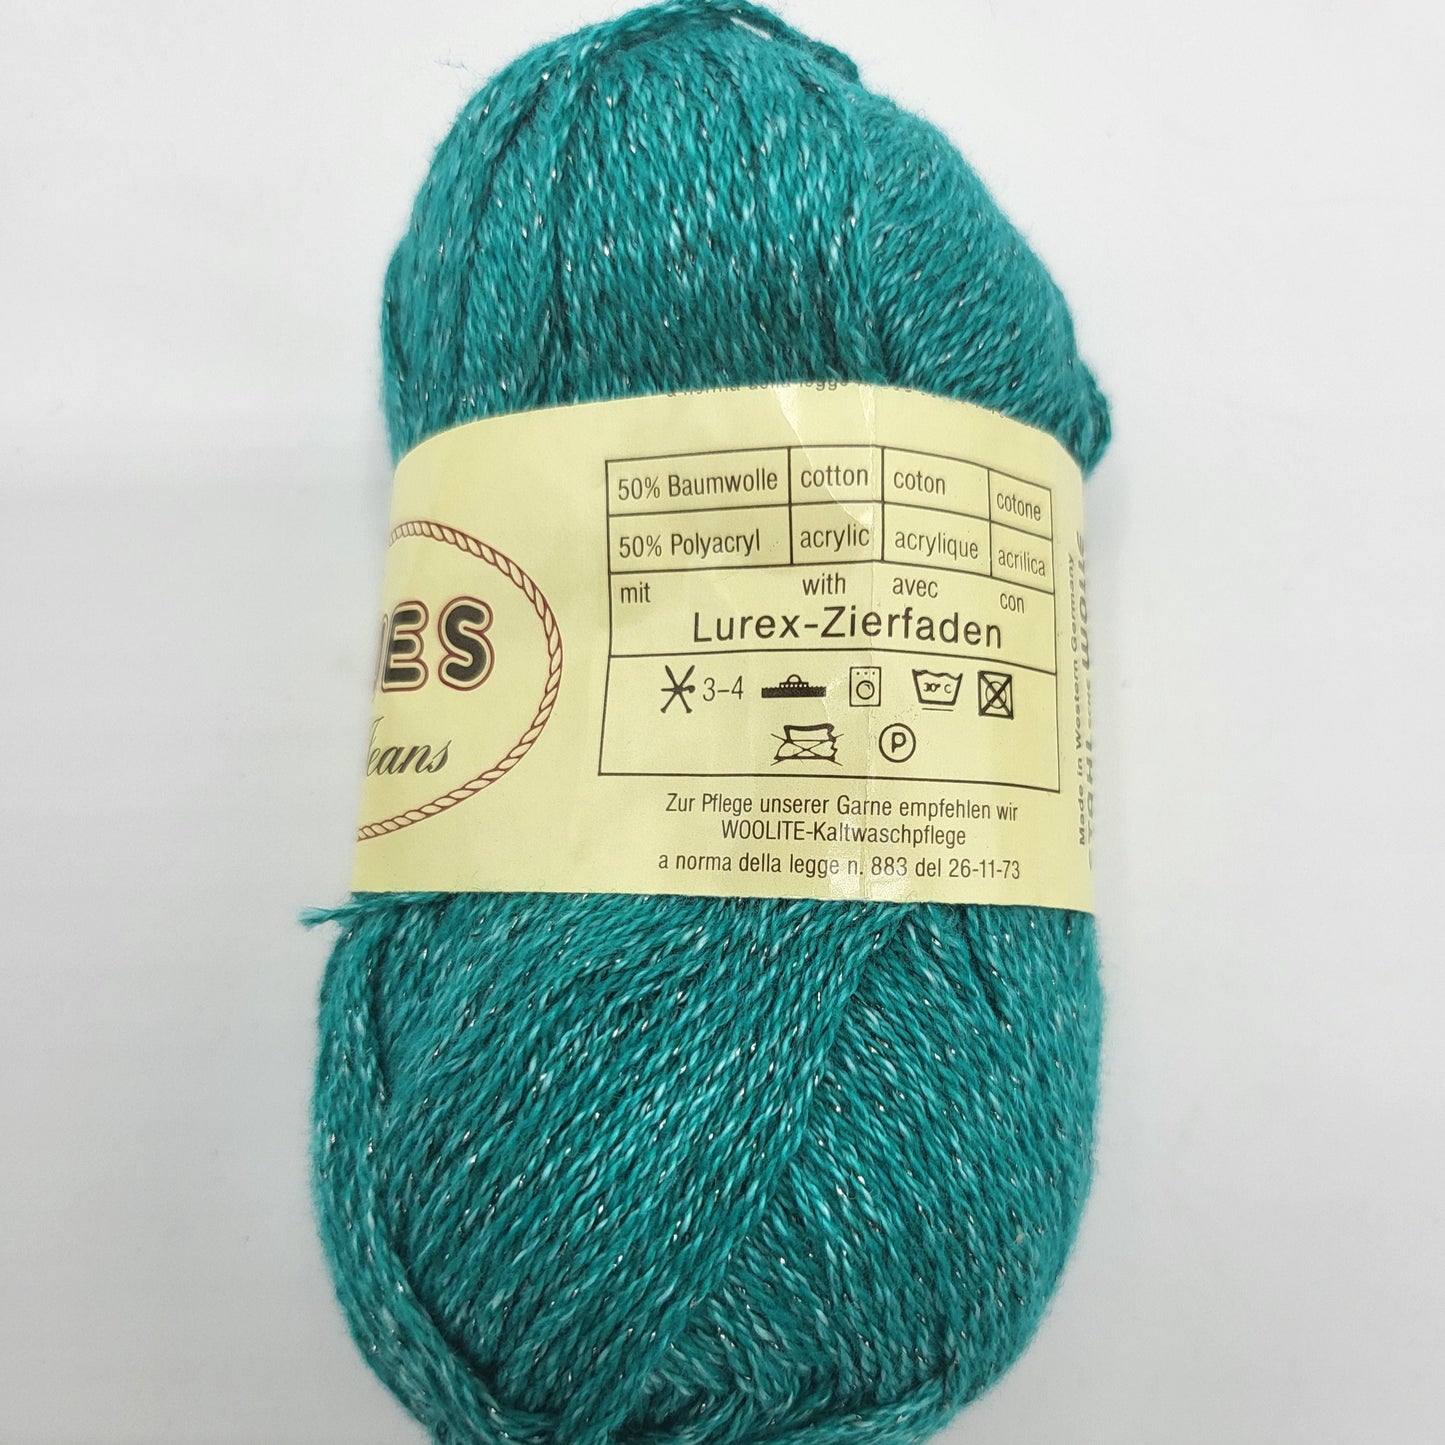 Stahl Wolle Blues 50g Baumwolle Vielseitig einsetzbar